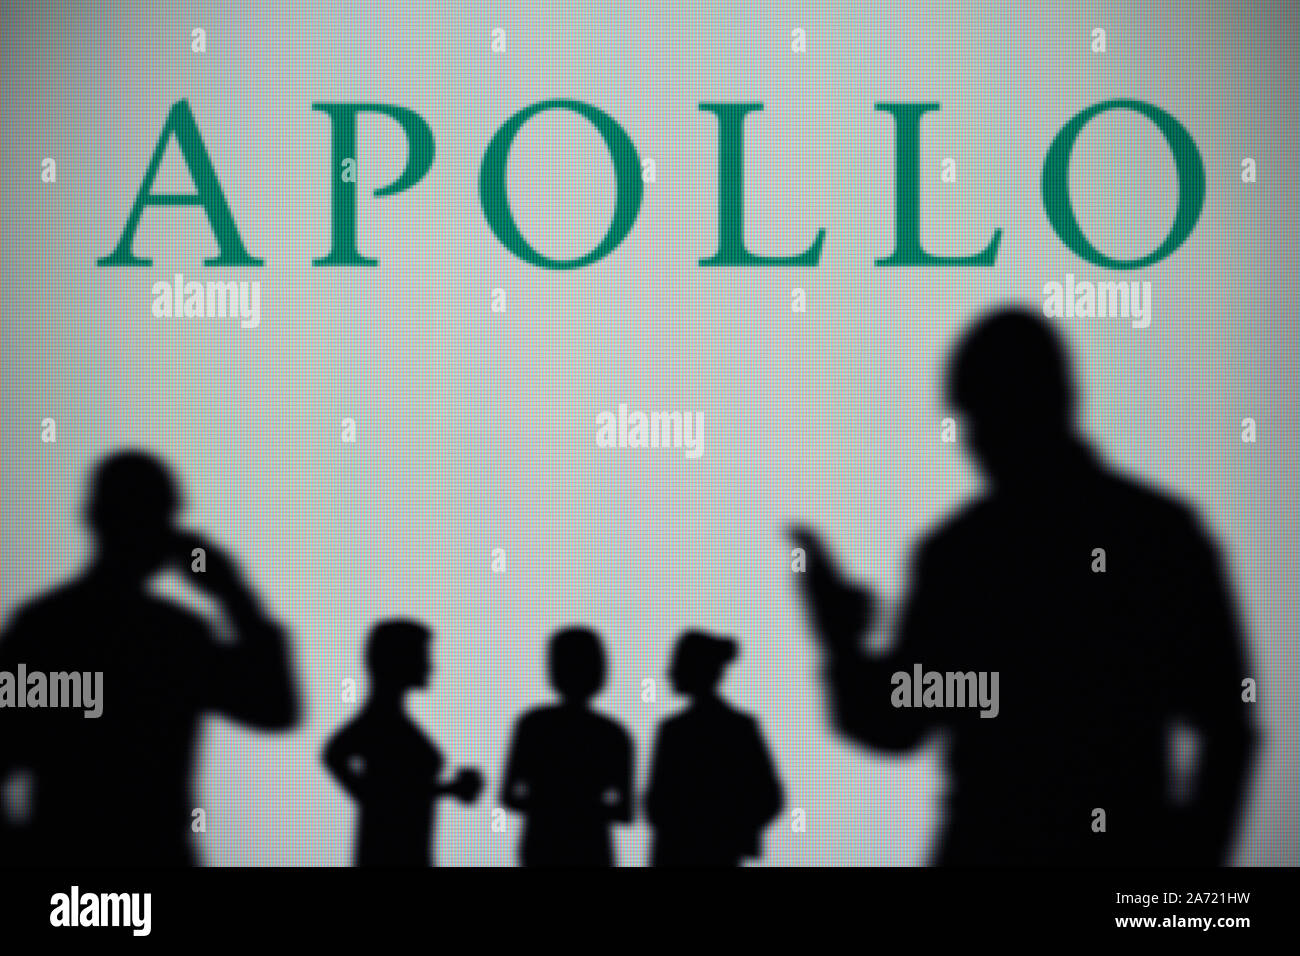 L'Apollo Global Management logo est visible sur un écran LED à l'arrière-plan tandis qu'une silhouette personne utilise un smartphone (usage éditorial uniquement) Banque D'Images